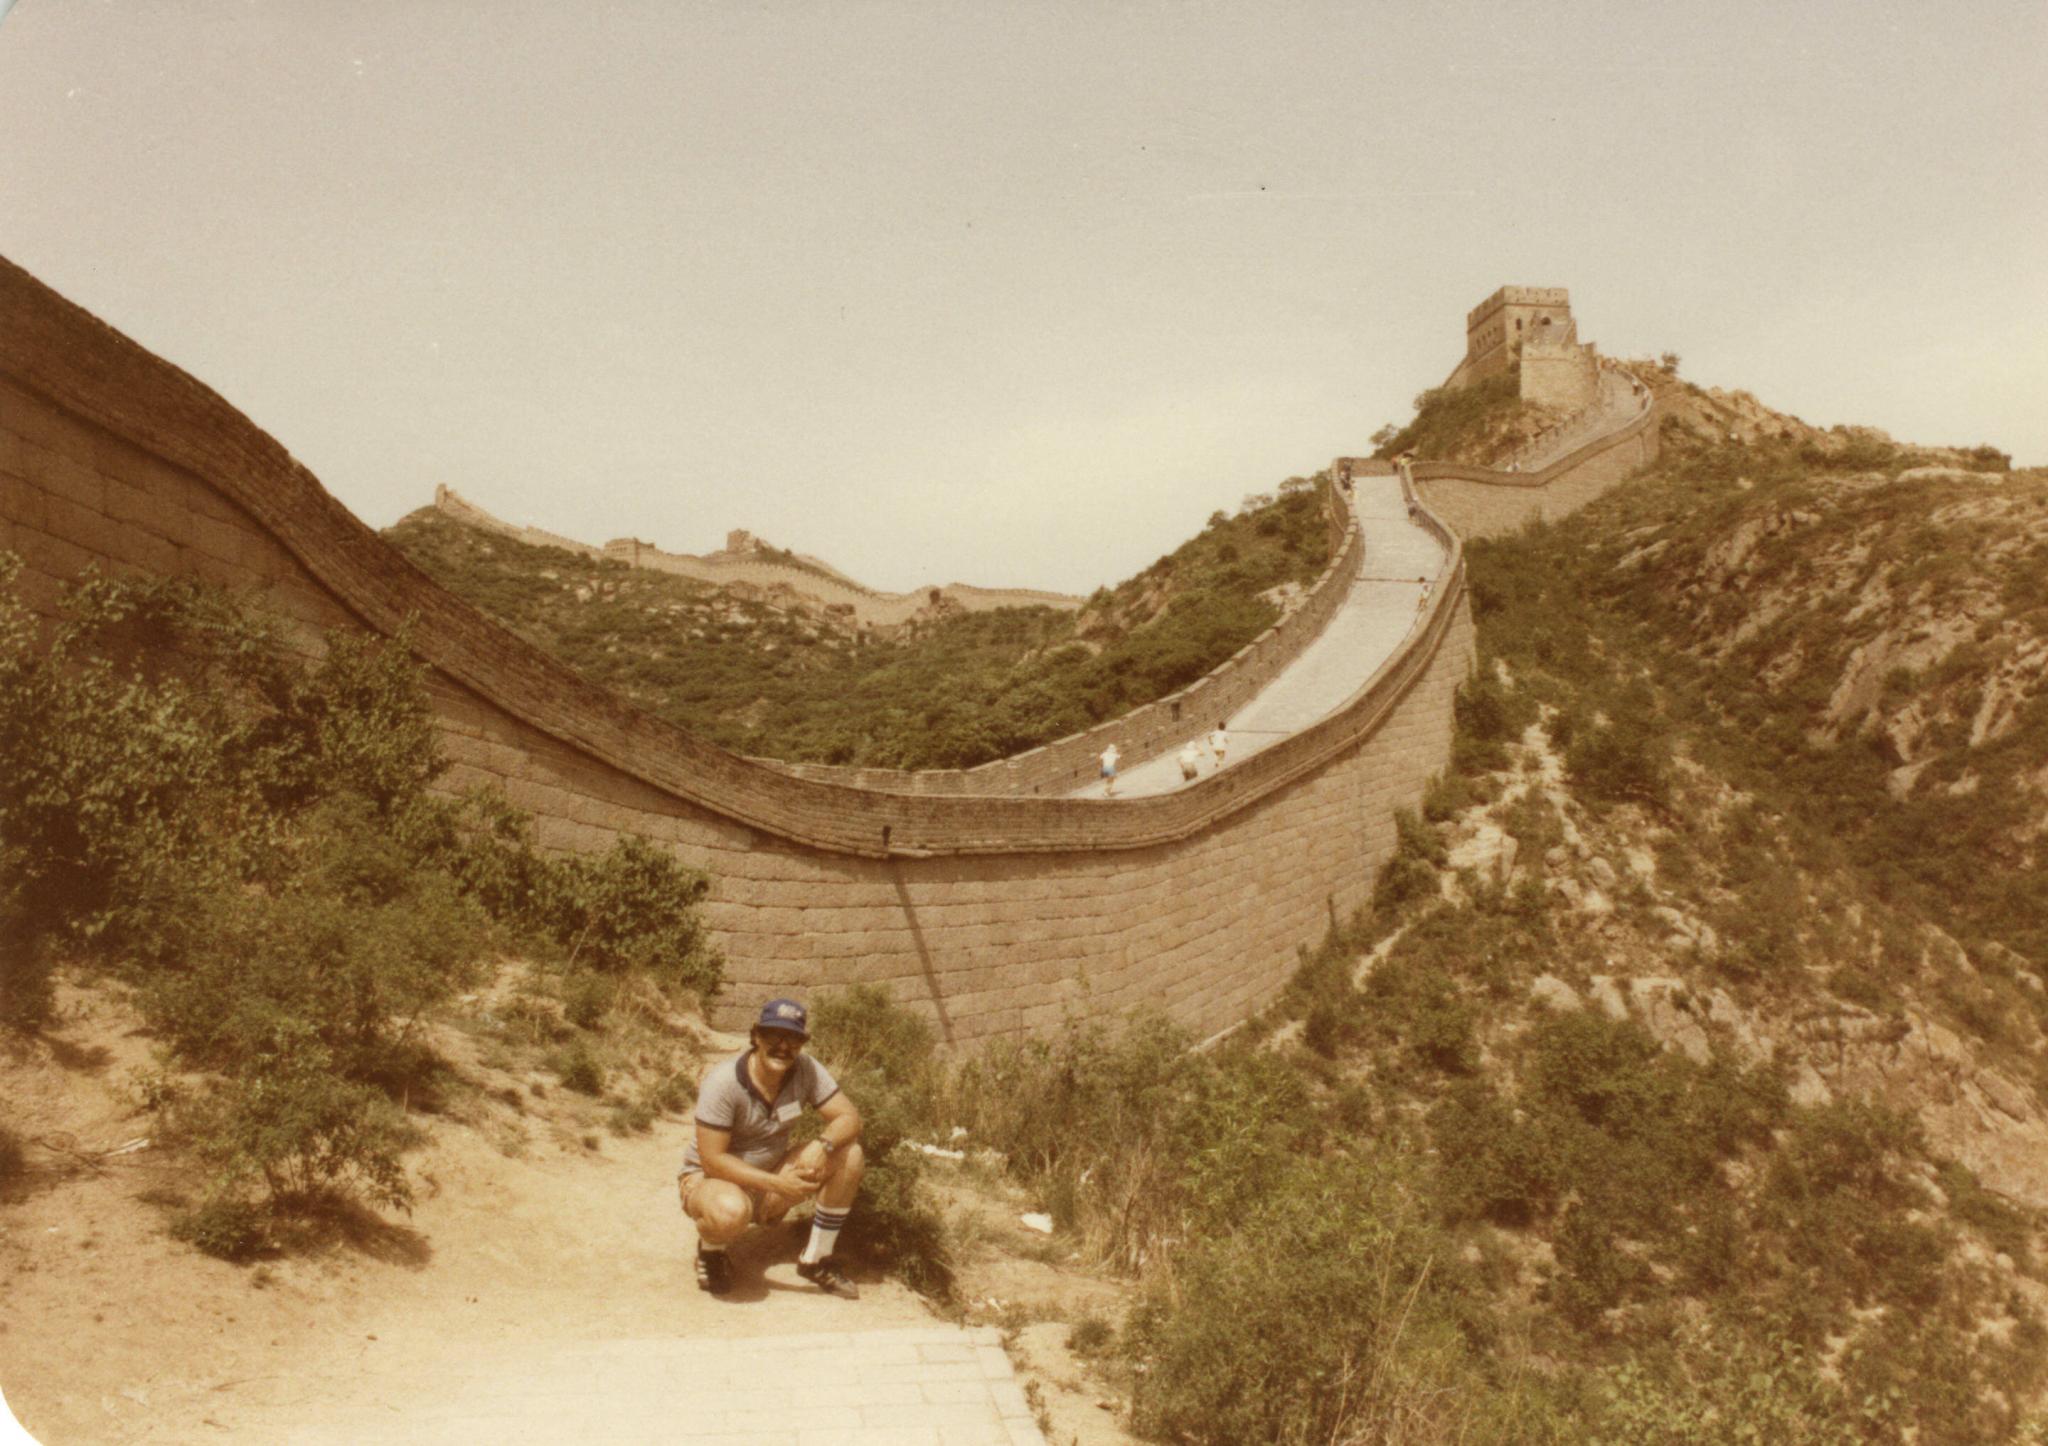 Gary Andersen at Great Wall of China (photo by Gary Andersen)